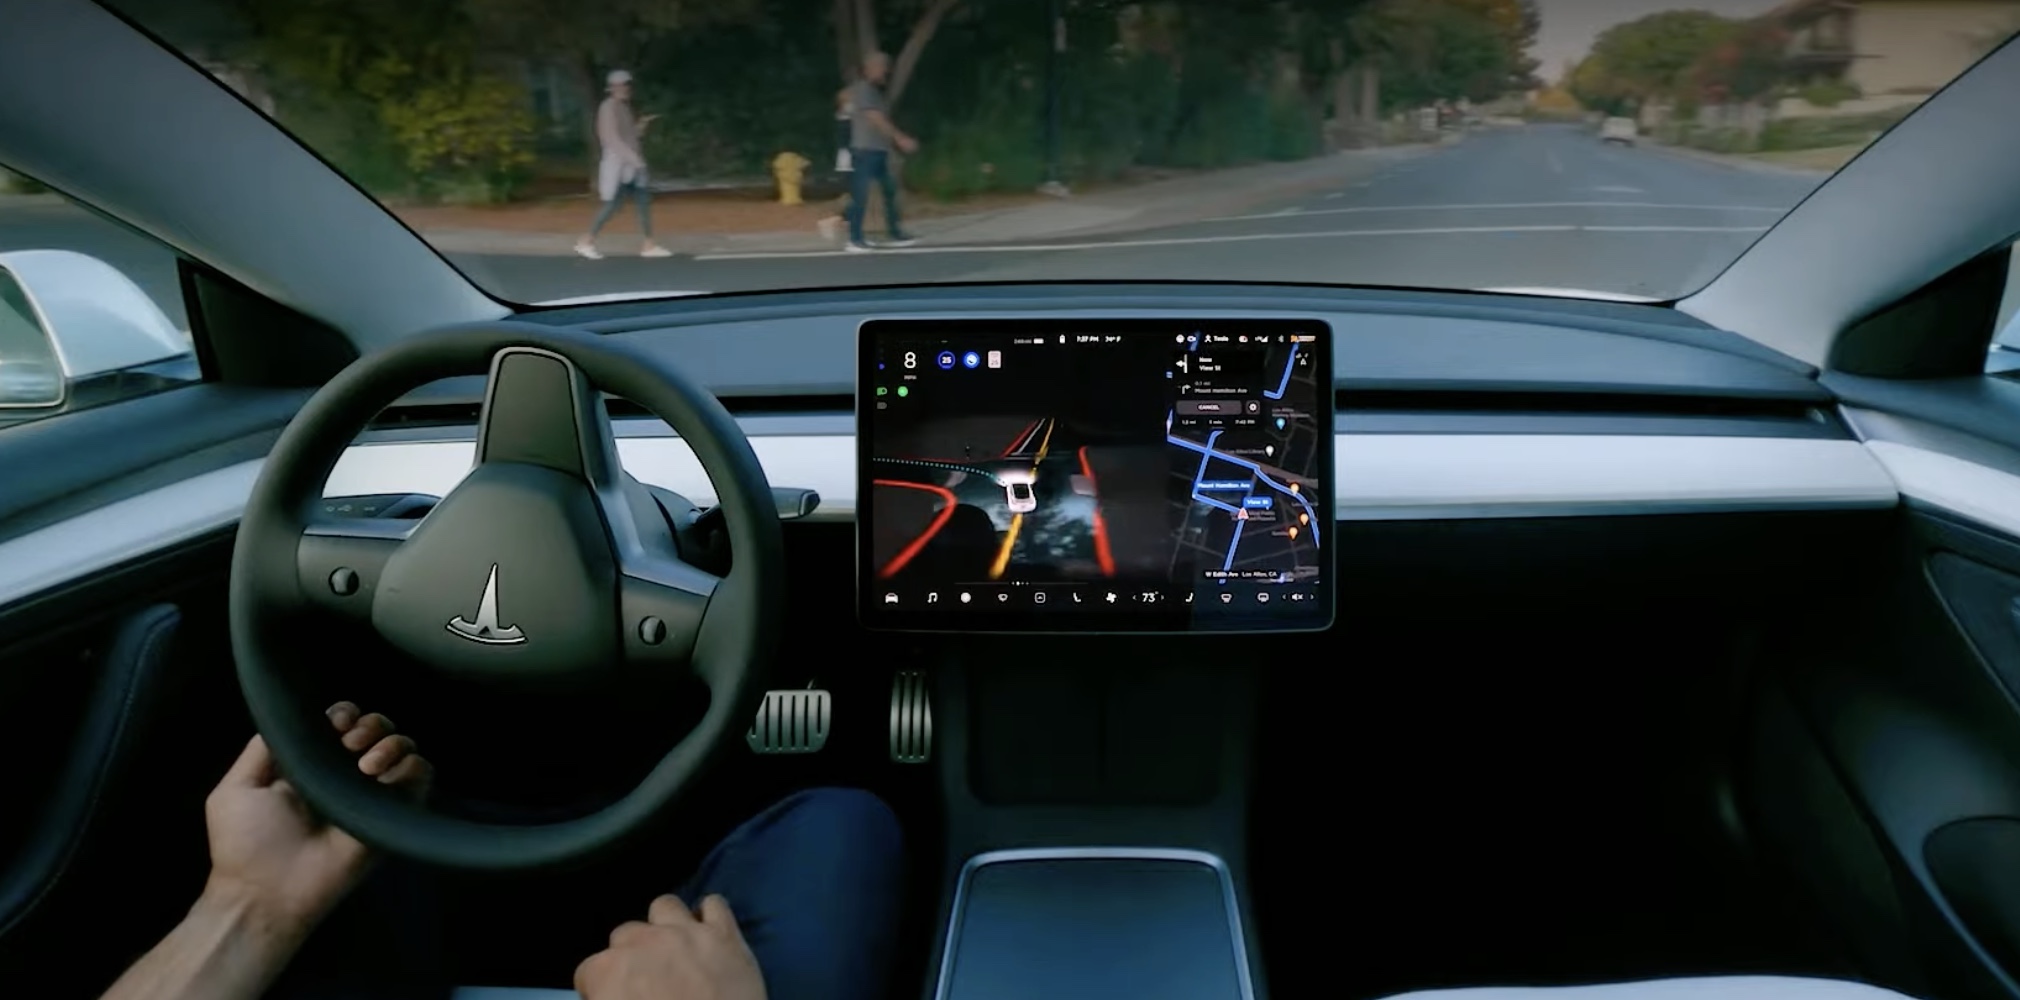 Tesla releases new Full Self-Driving Beta update (10.7) with improved phantom braking and efficiency - Electrek